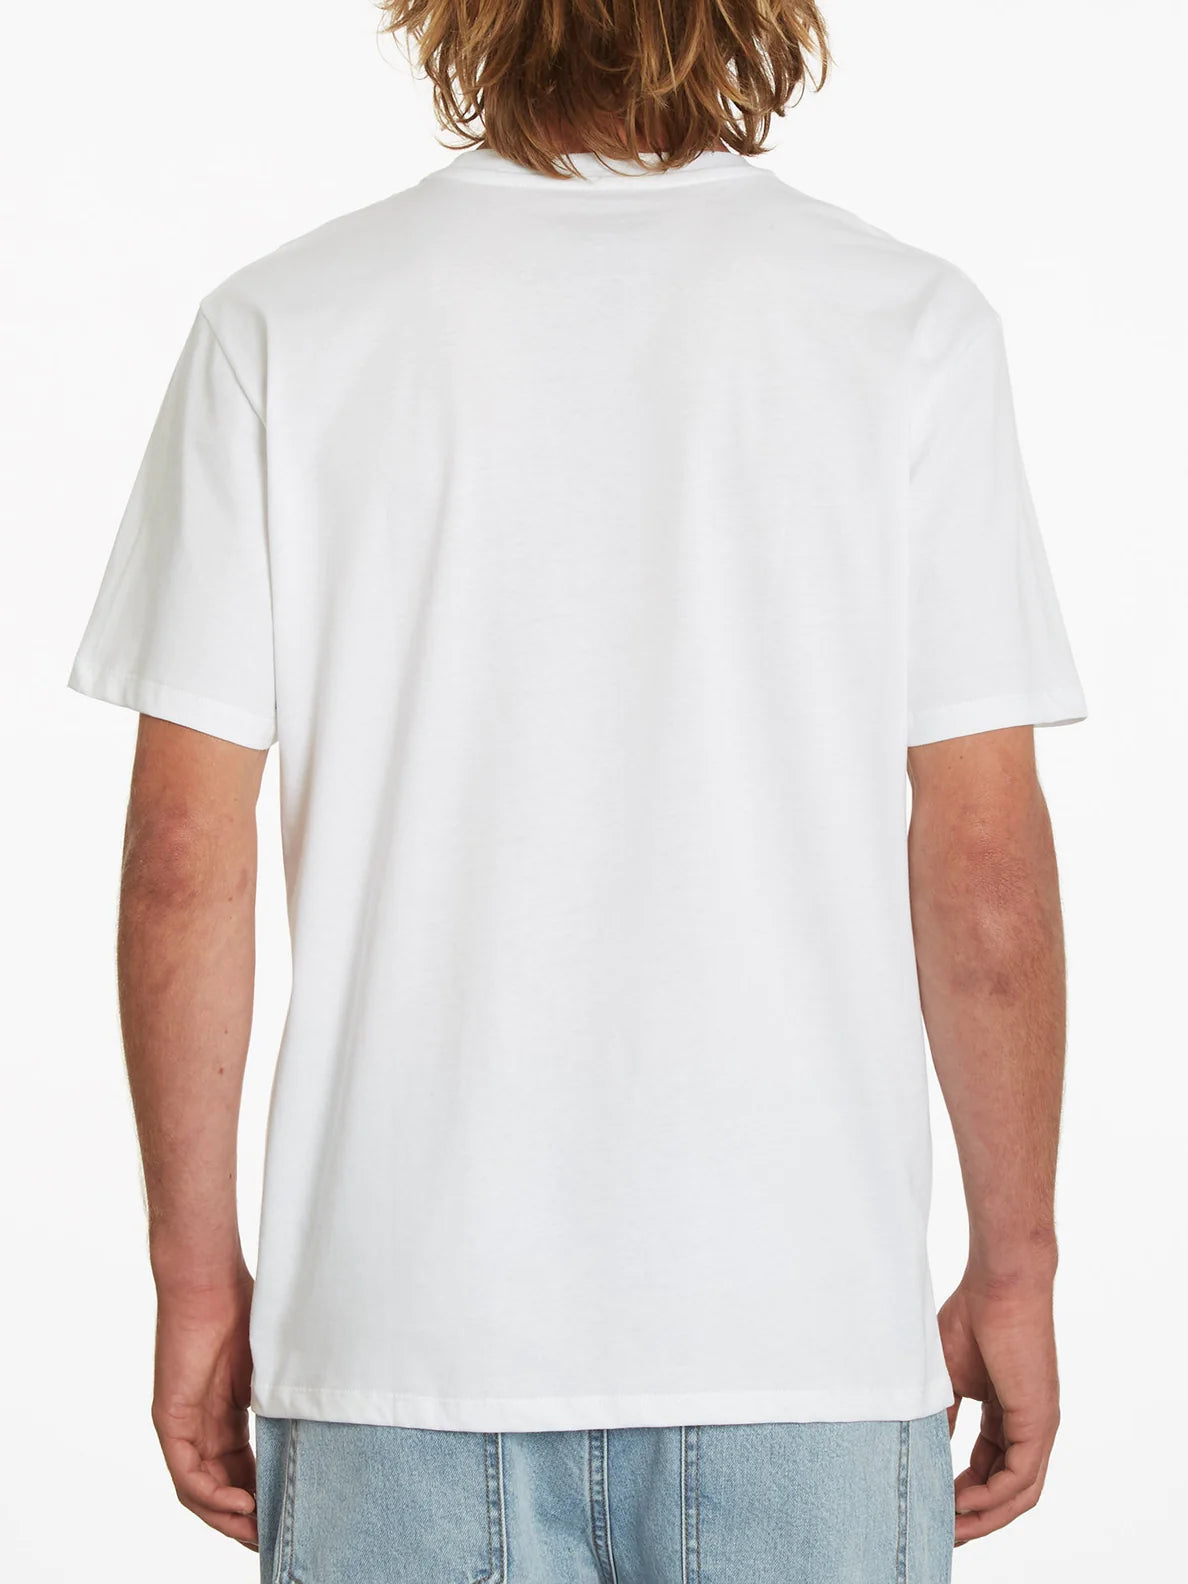 Camiseta Volcom Preacher White | Camisetas de hombre | Camisetas manga corta de hombre | Volcom Shop | surfdevils.com